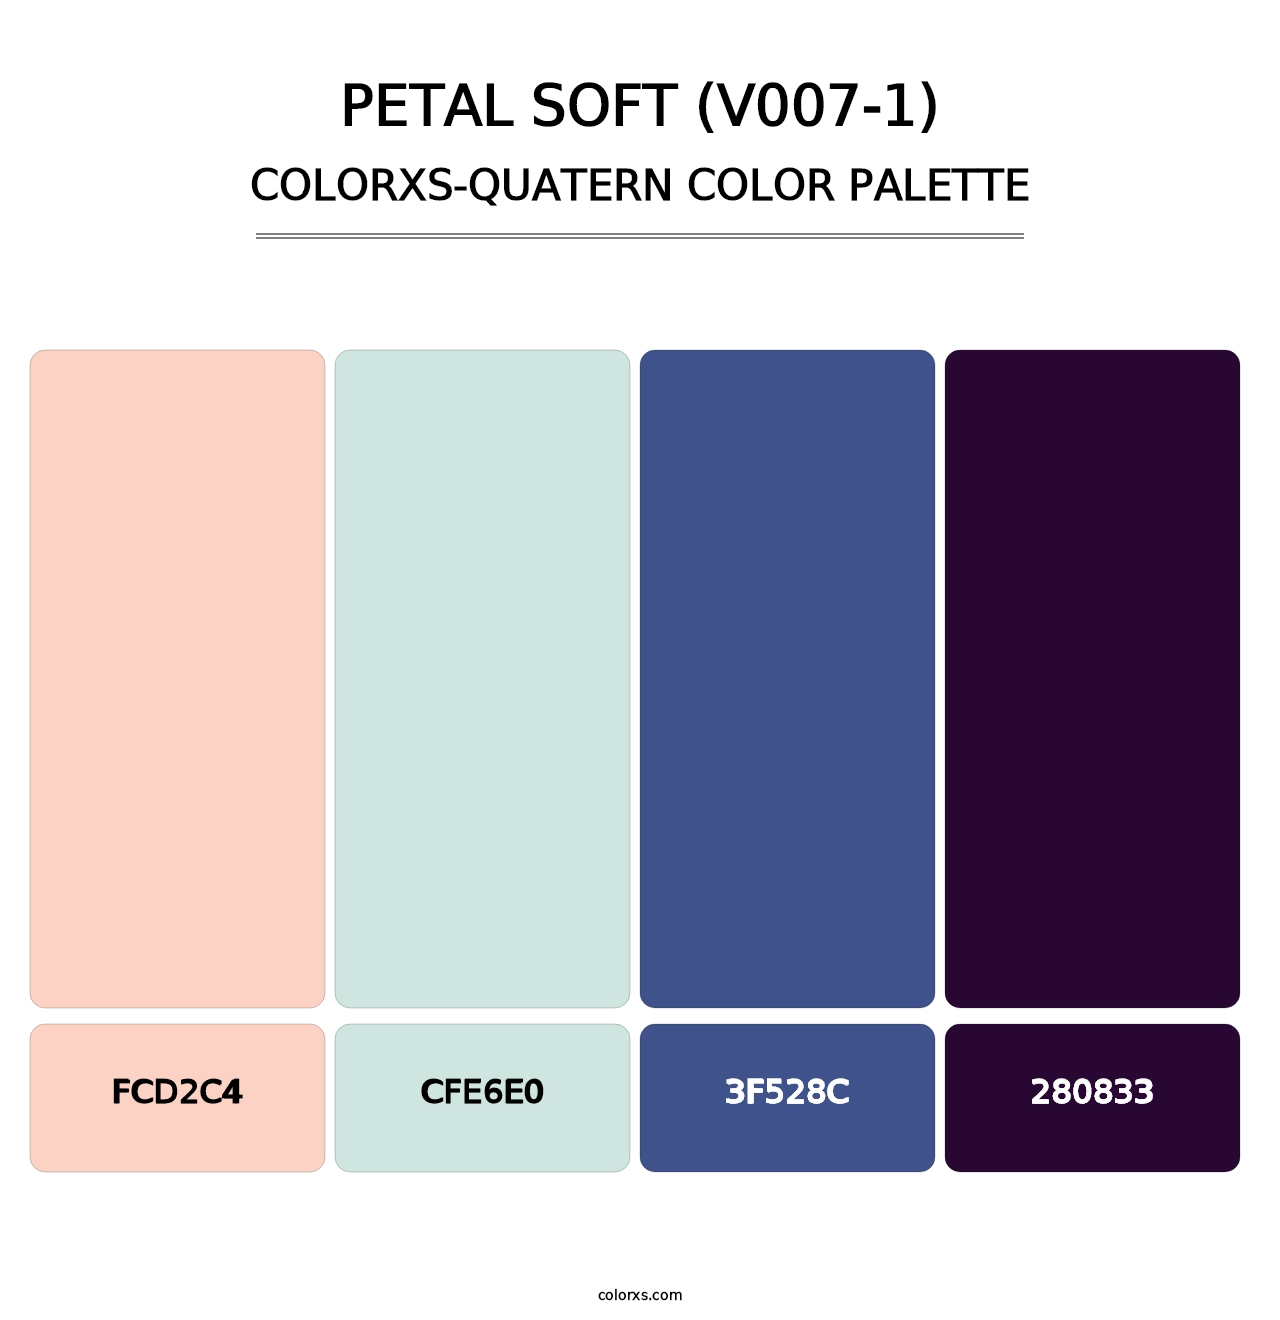 Petal Soft (V007-1) - Colorxs Quatern Palette